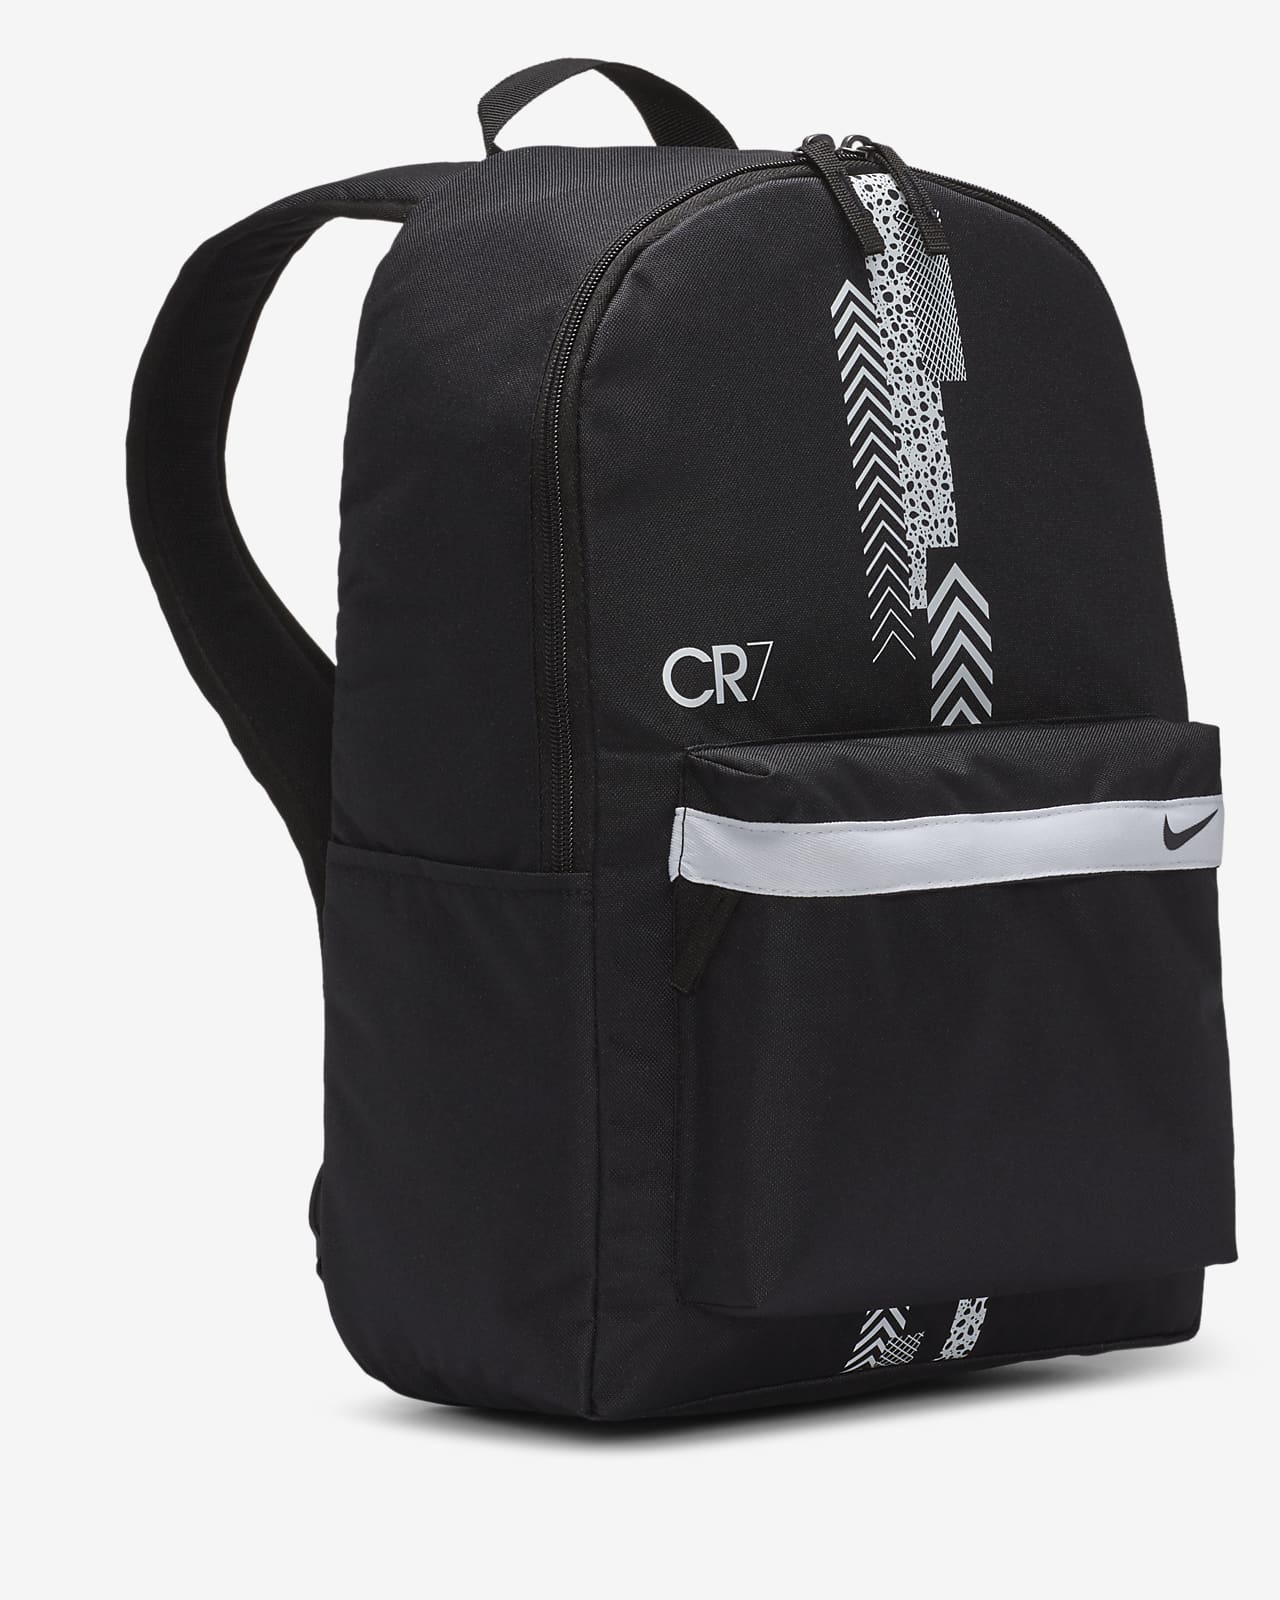 cr7 soccer backpack